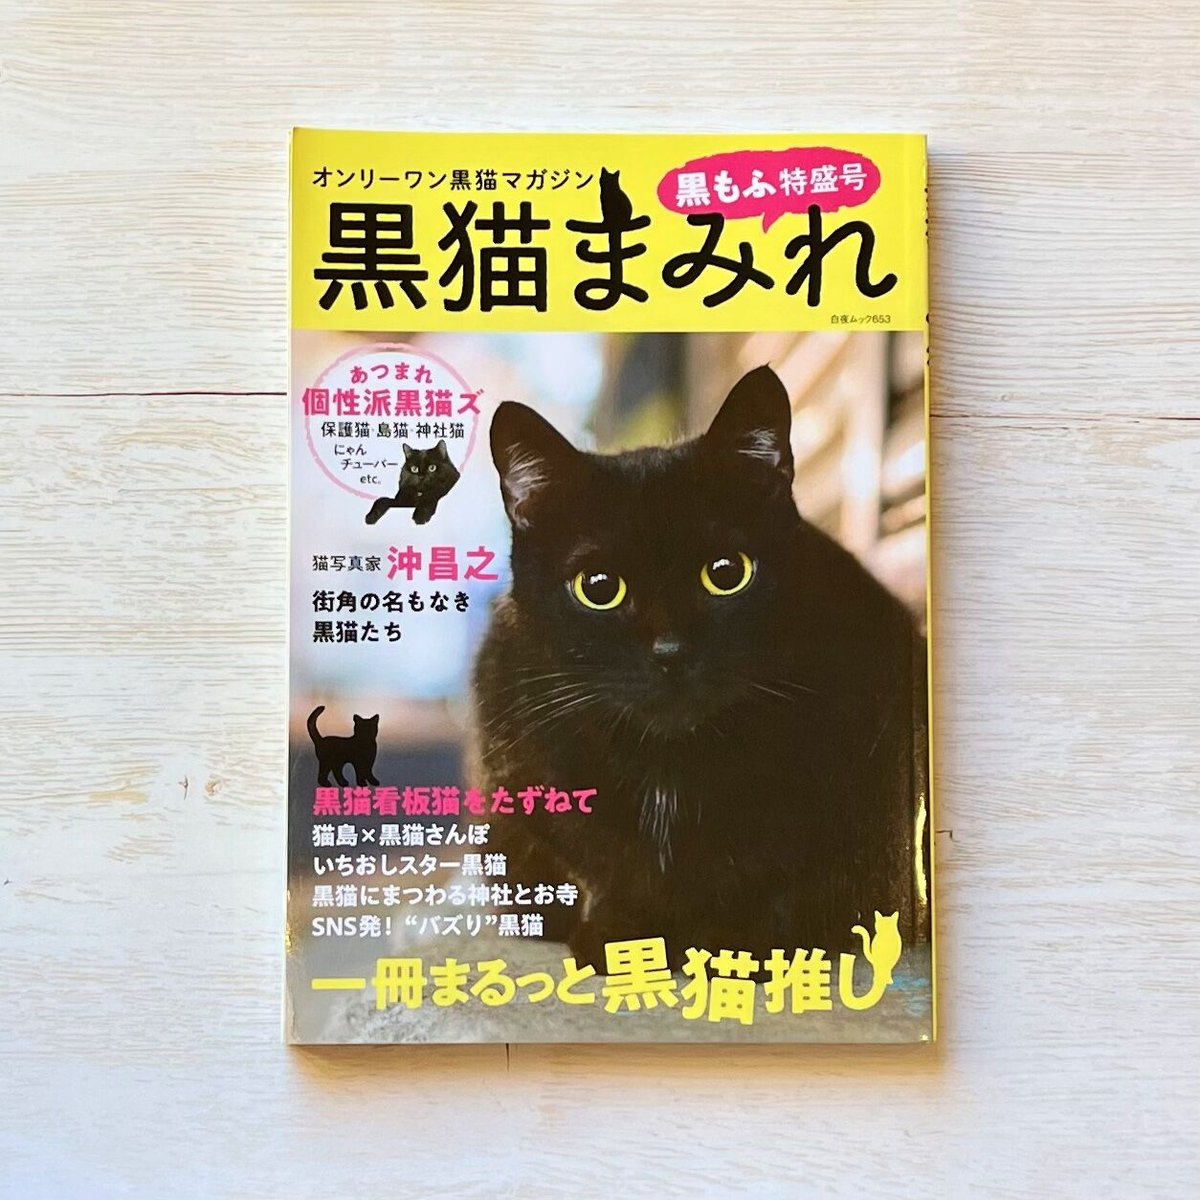 黒猫まみれ 黒もふ特盛号 necoya books web store